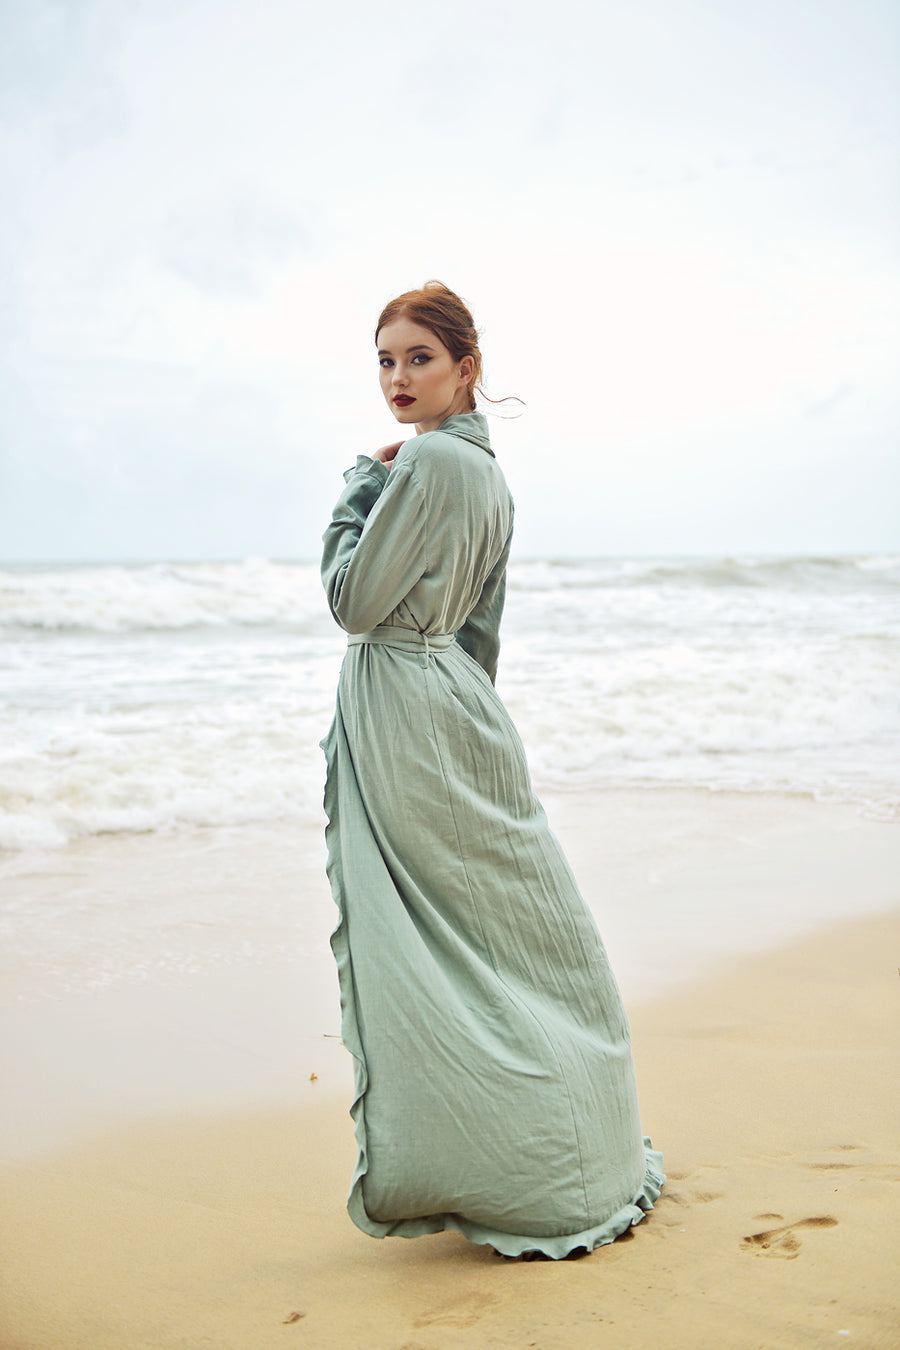 Robes for Women Linen - Robe Kimono Linen - Women Long Robe - Long Sleeve Robe